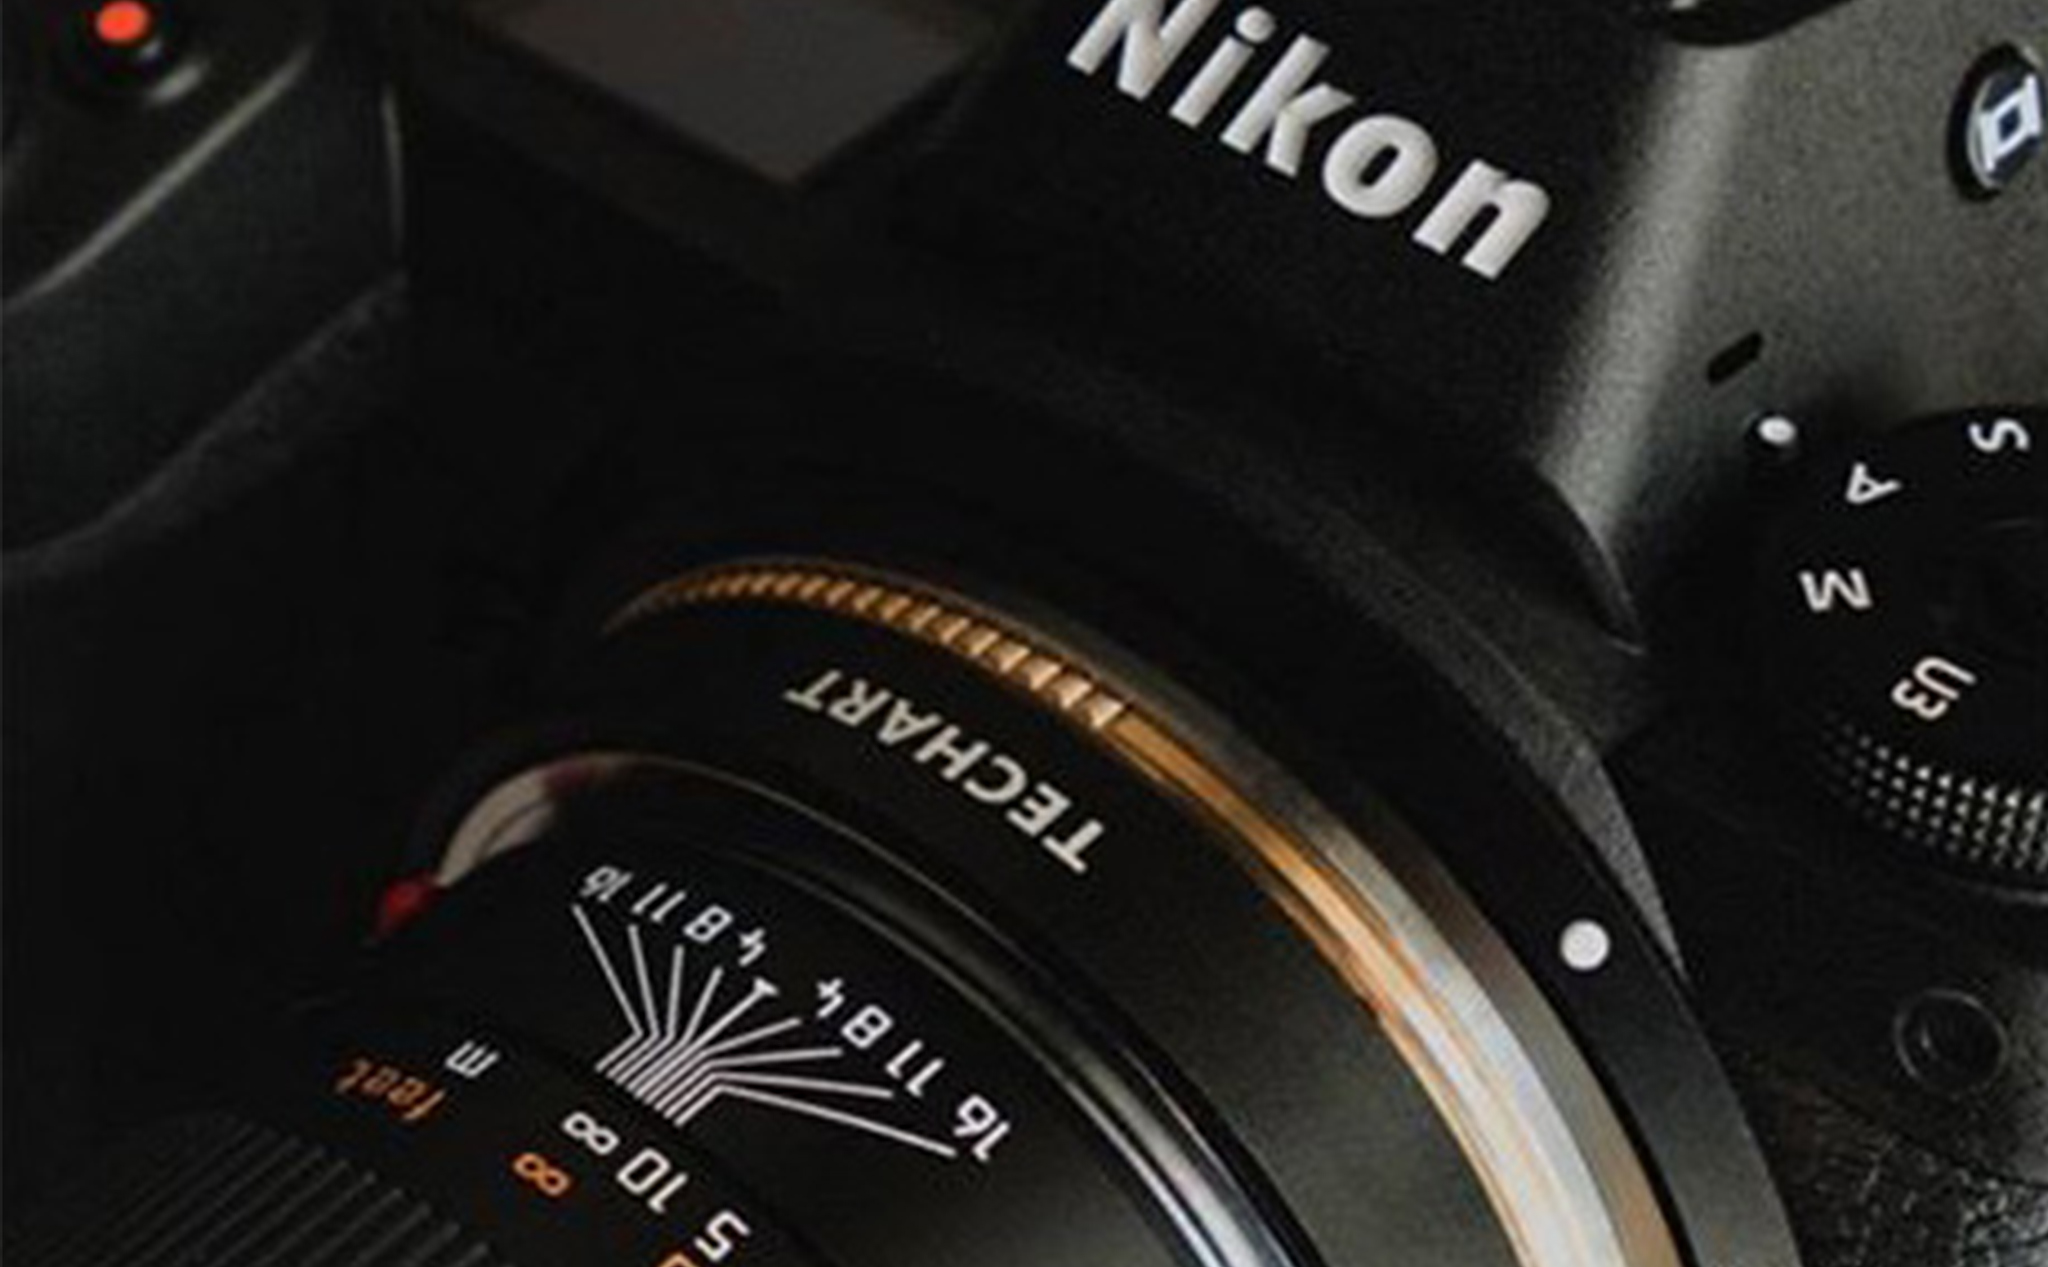 Ống kính Sony E sẽ dùng được trên Nikon Z với chức năng AF như ống chính hãng